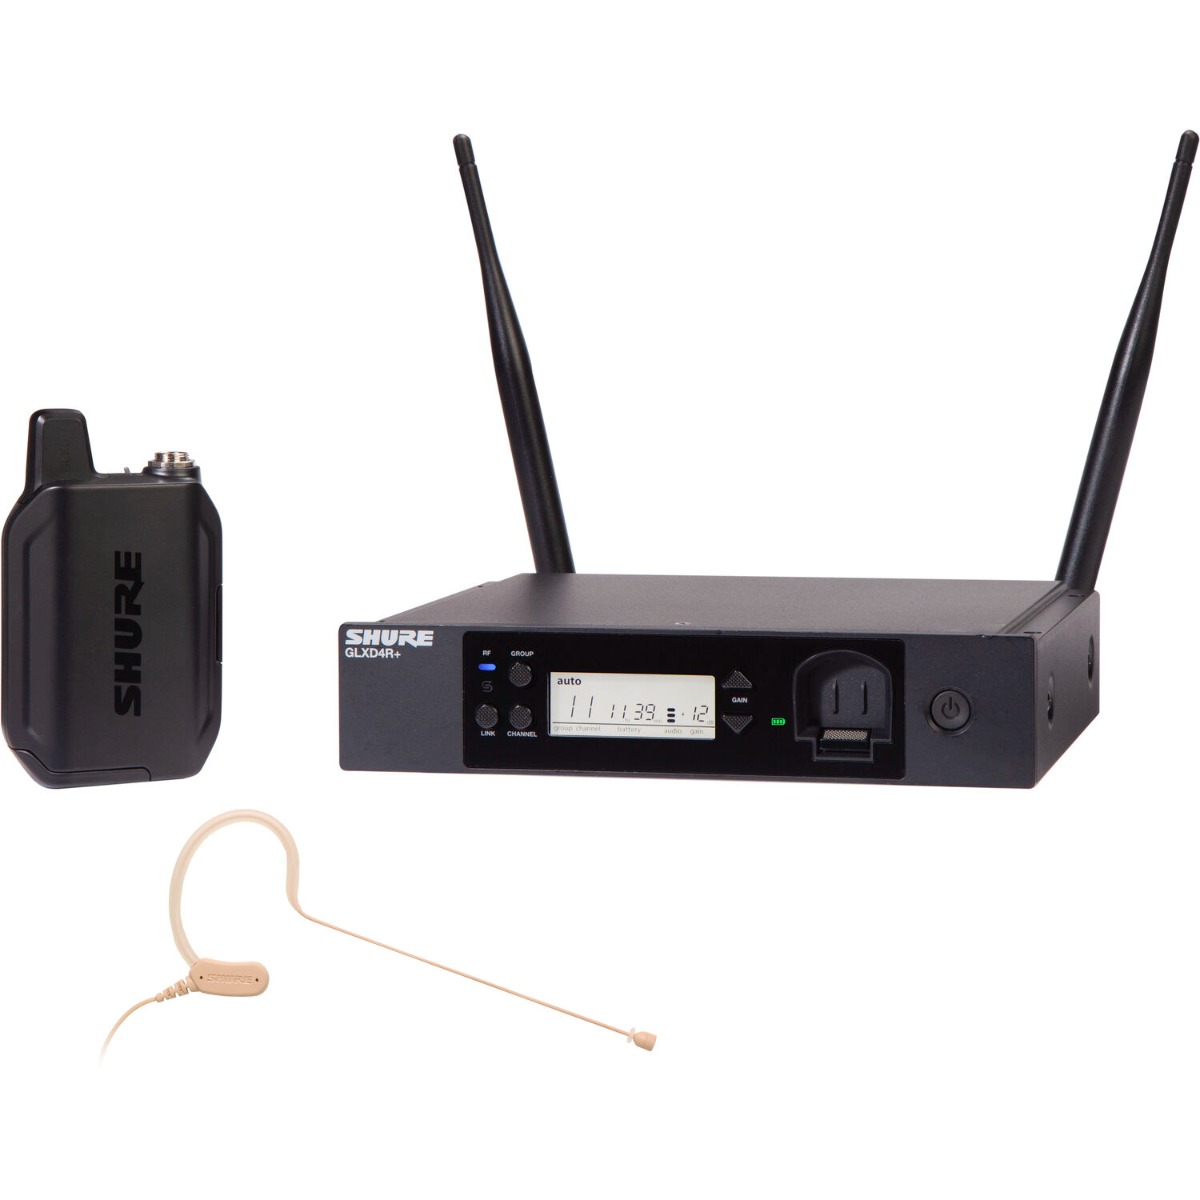 Shure GLXD14R+/MX53 - Digital Wireless Rack System with MX153 Headset Microphone